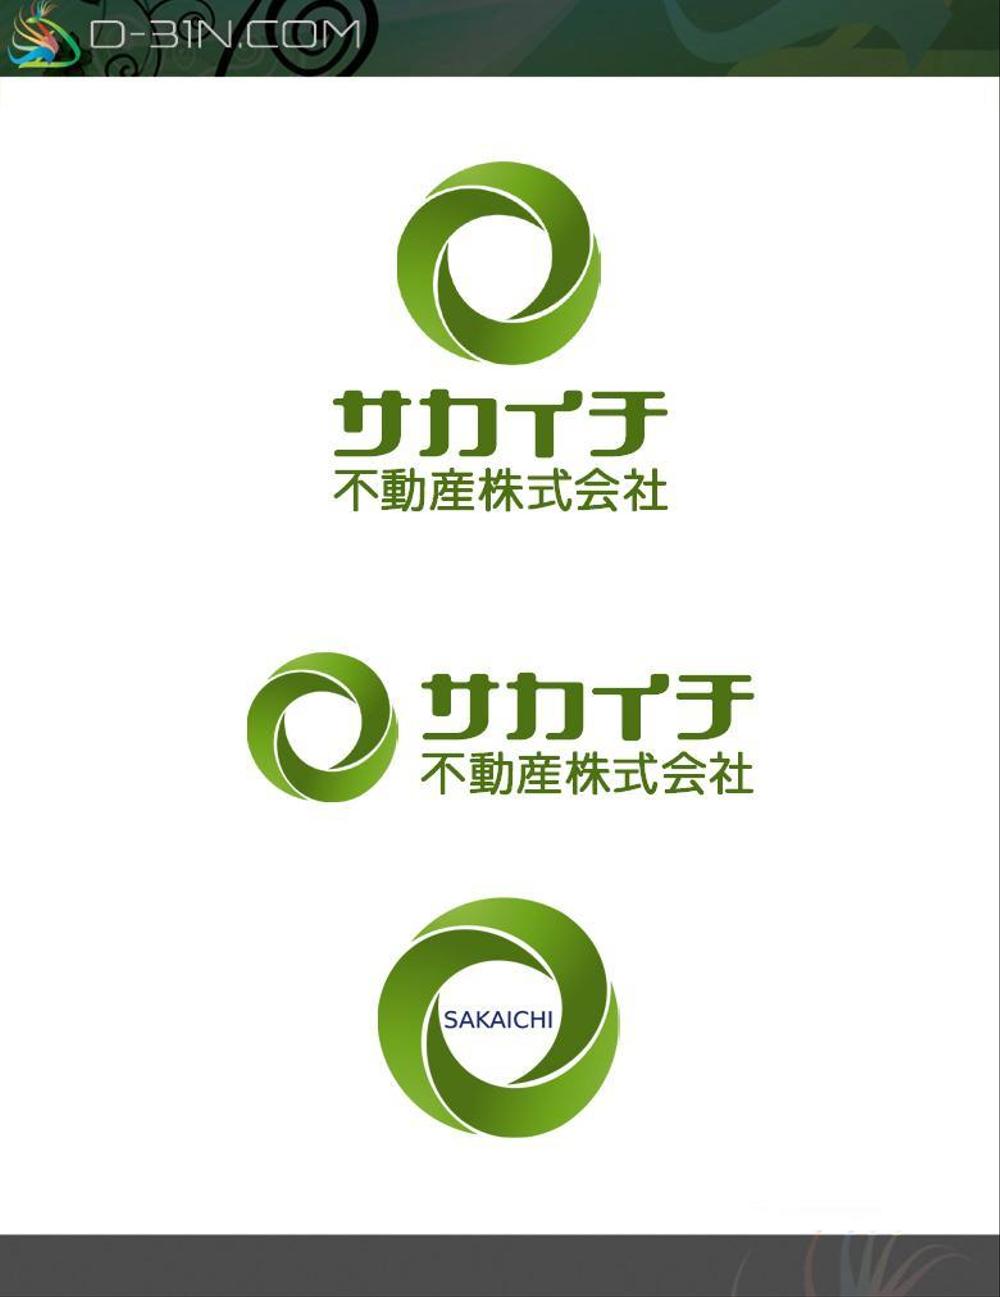 sakaichi-logo01.jpg